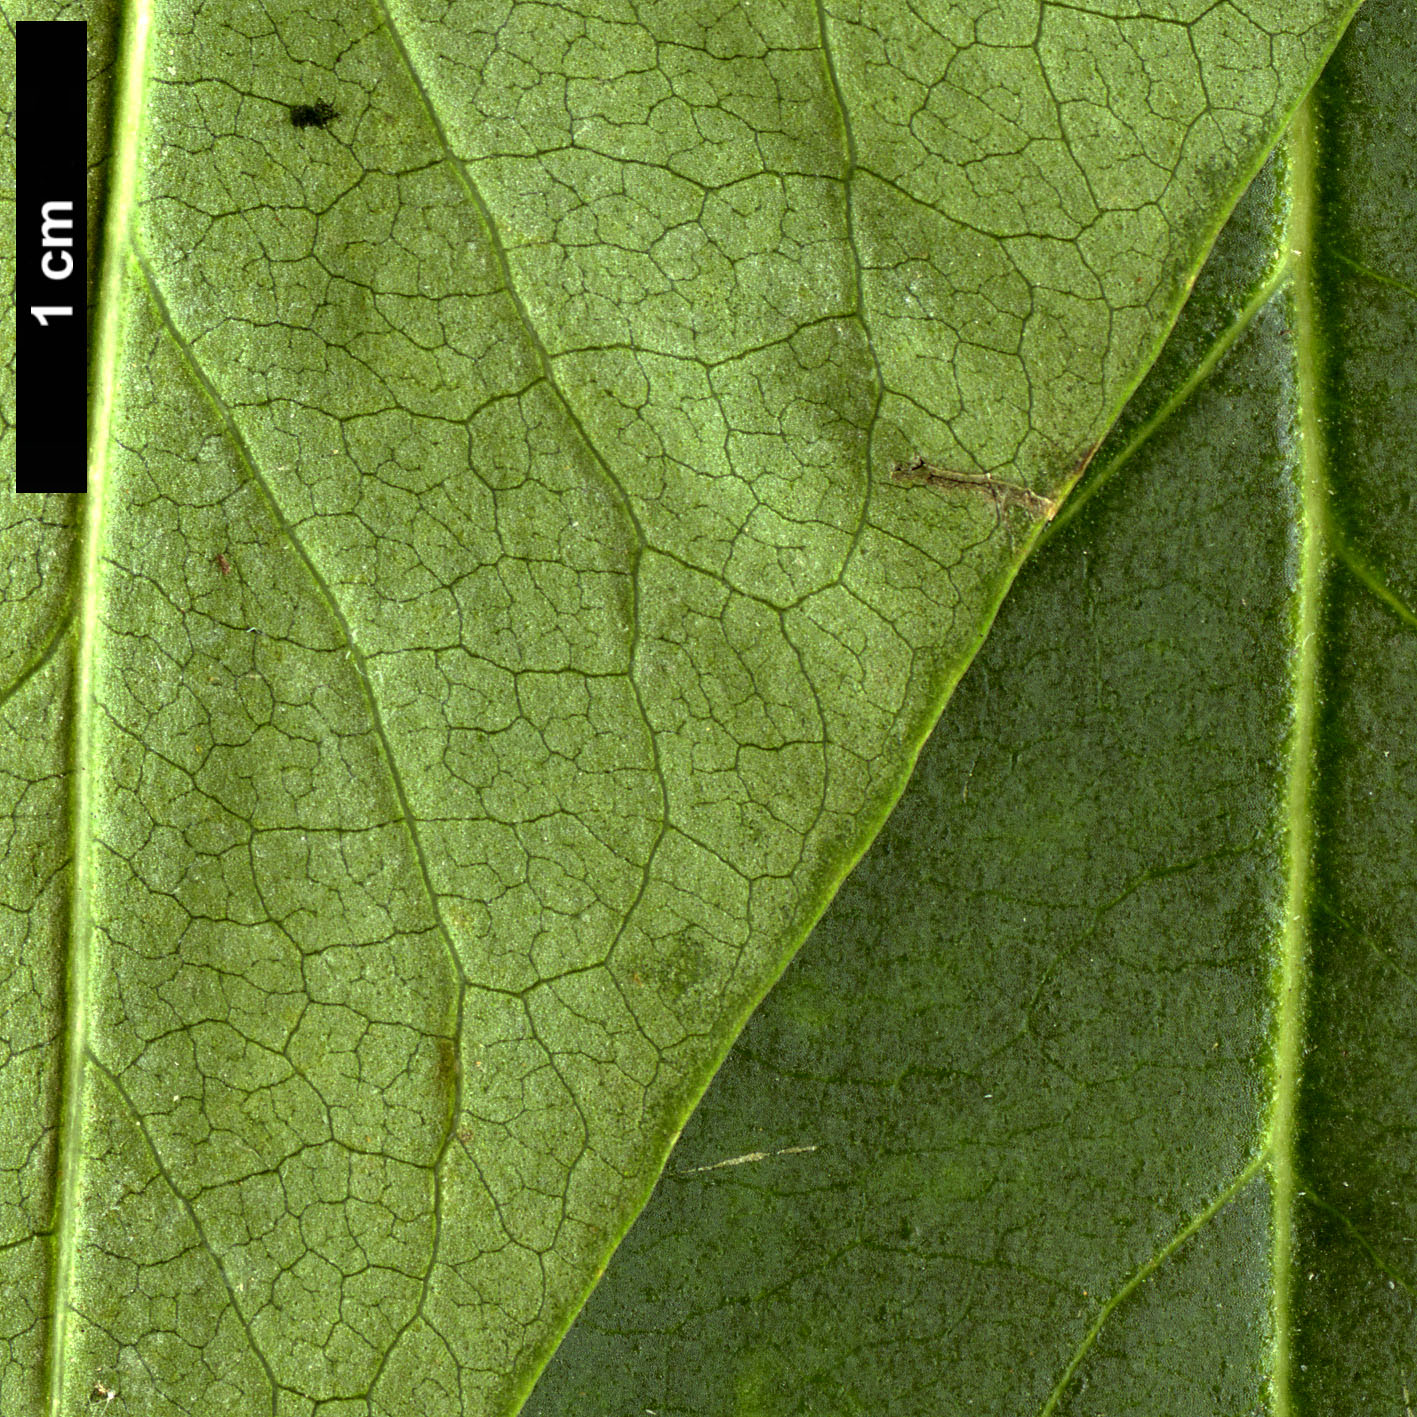 High resolution image: Family: Oleaceae - Genus: Syringa - Taxon: vulgaris